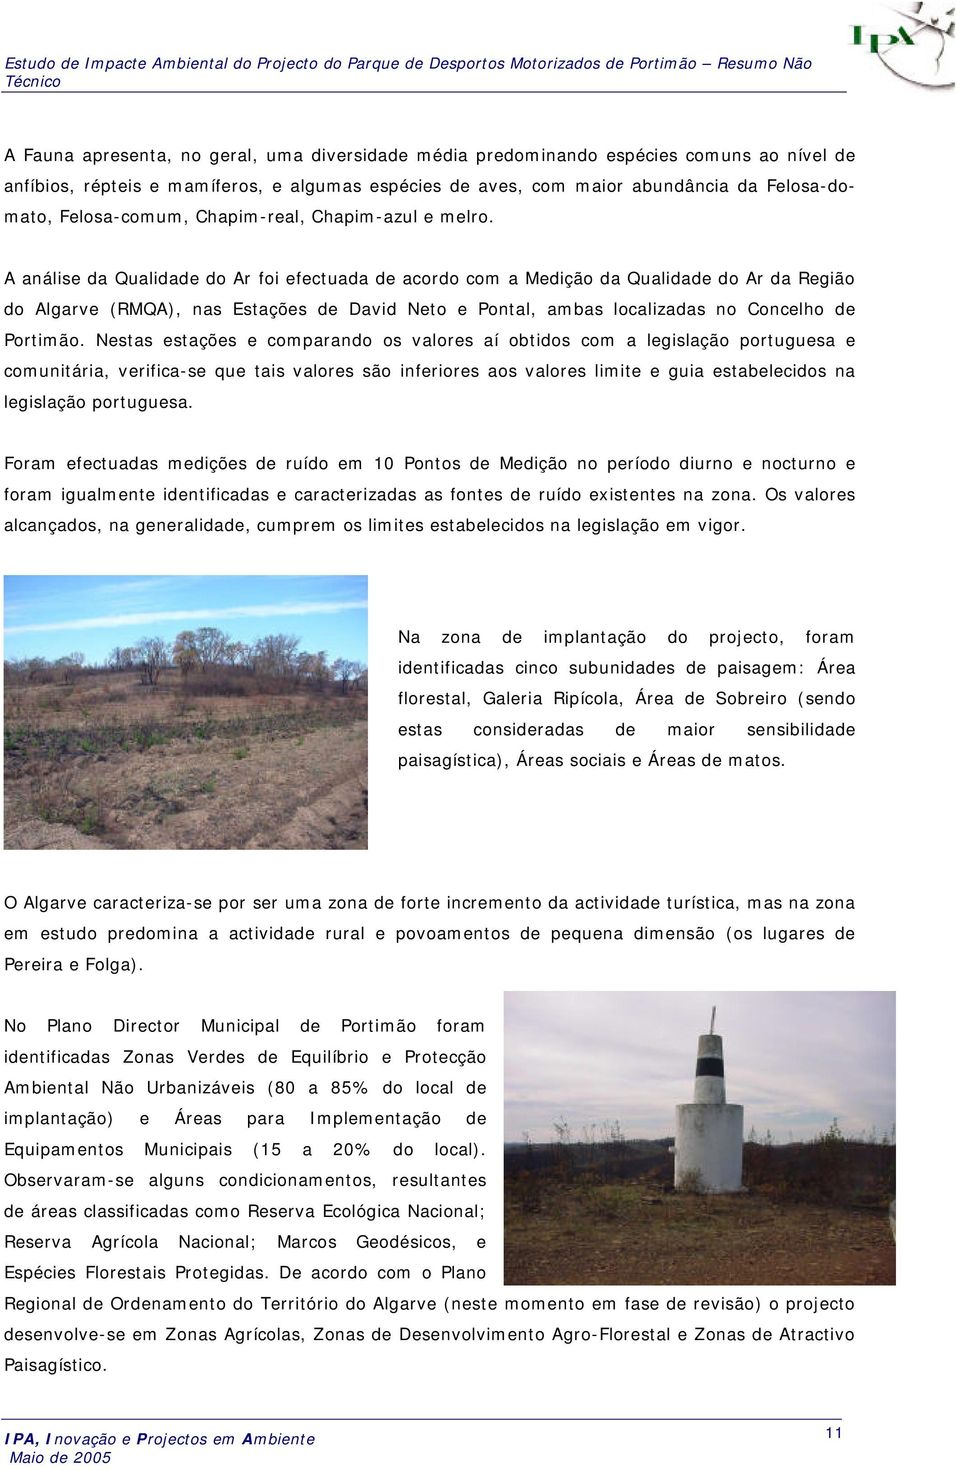 A análise da Qualidade do Ar foi efectuada de acordo com a Medição da Qualidade do Ar da Região do Algarve (RMQA), nas Estações de David Neto e Pontal, ambas localizadas no Concelho de Portimão.